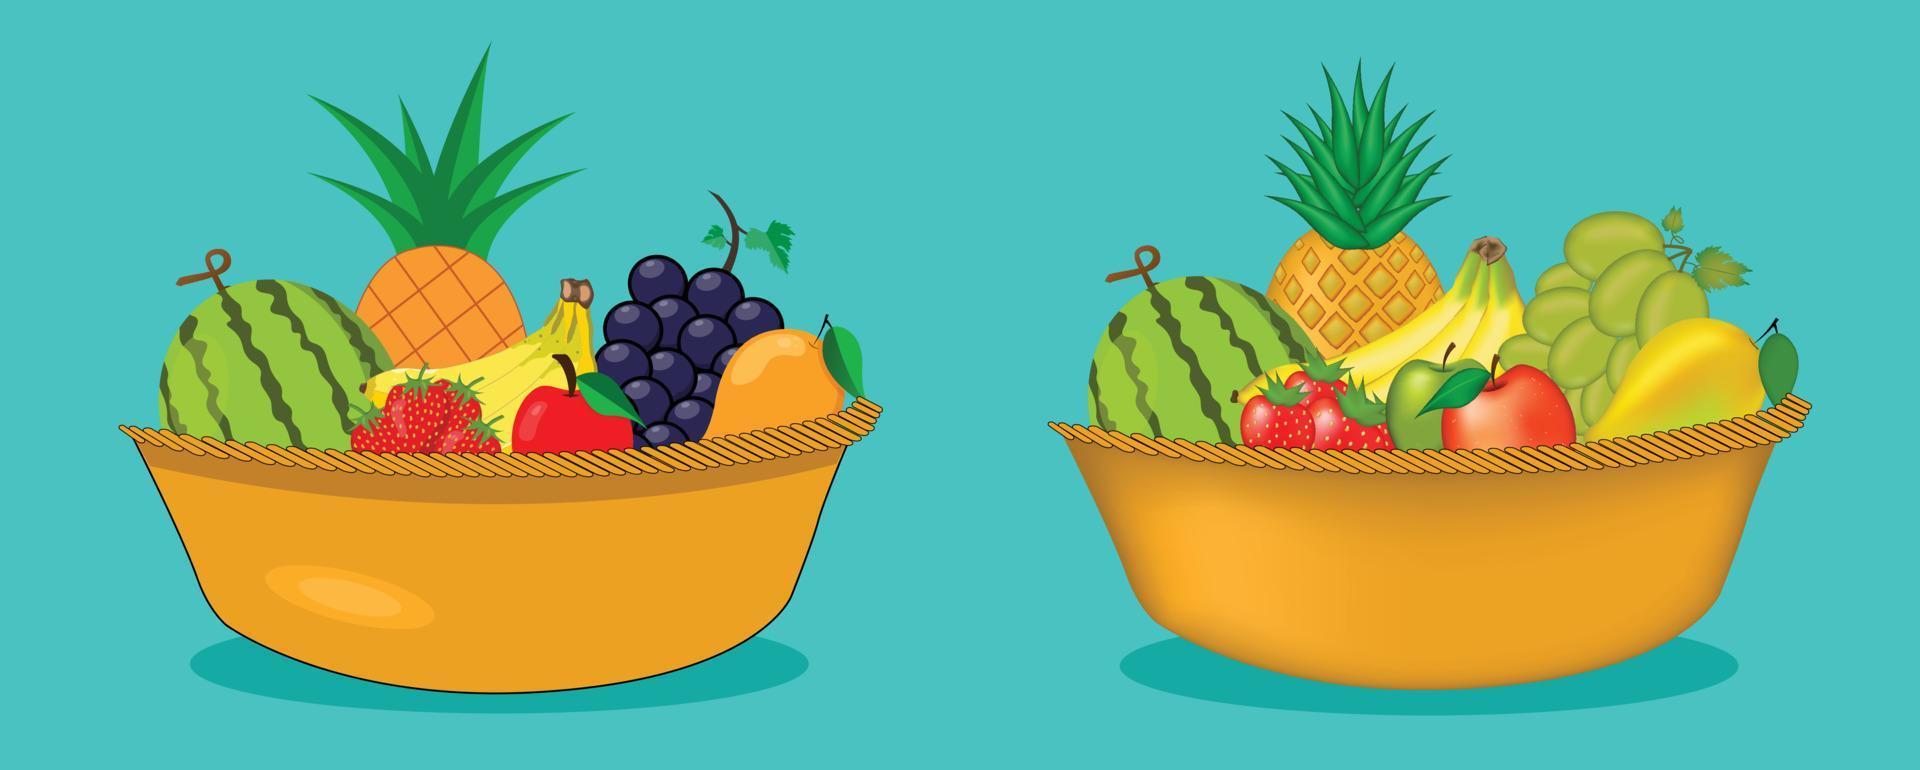 cesta com frutas isoladas na ilustração vetorial de fundo azul. vetor